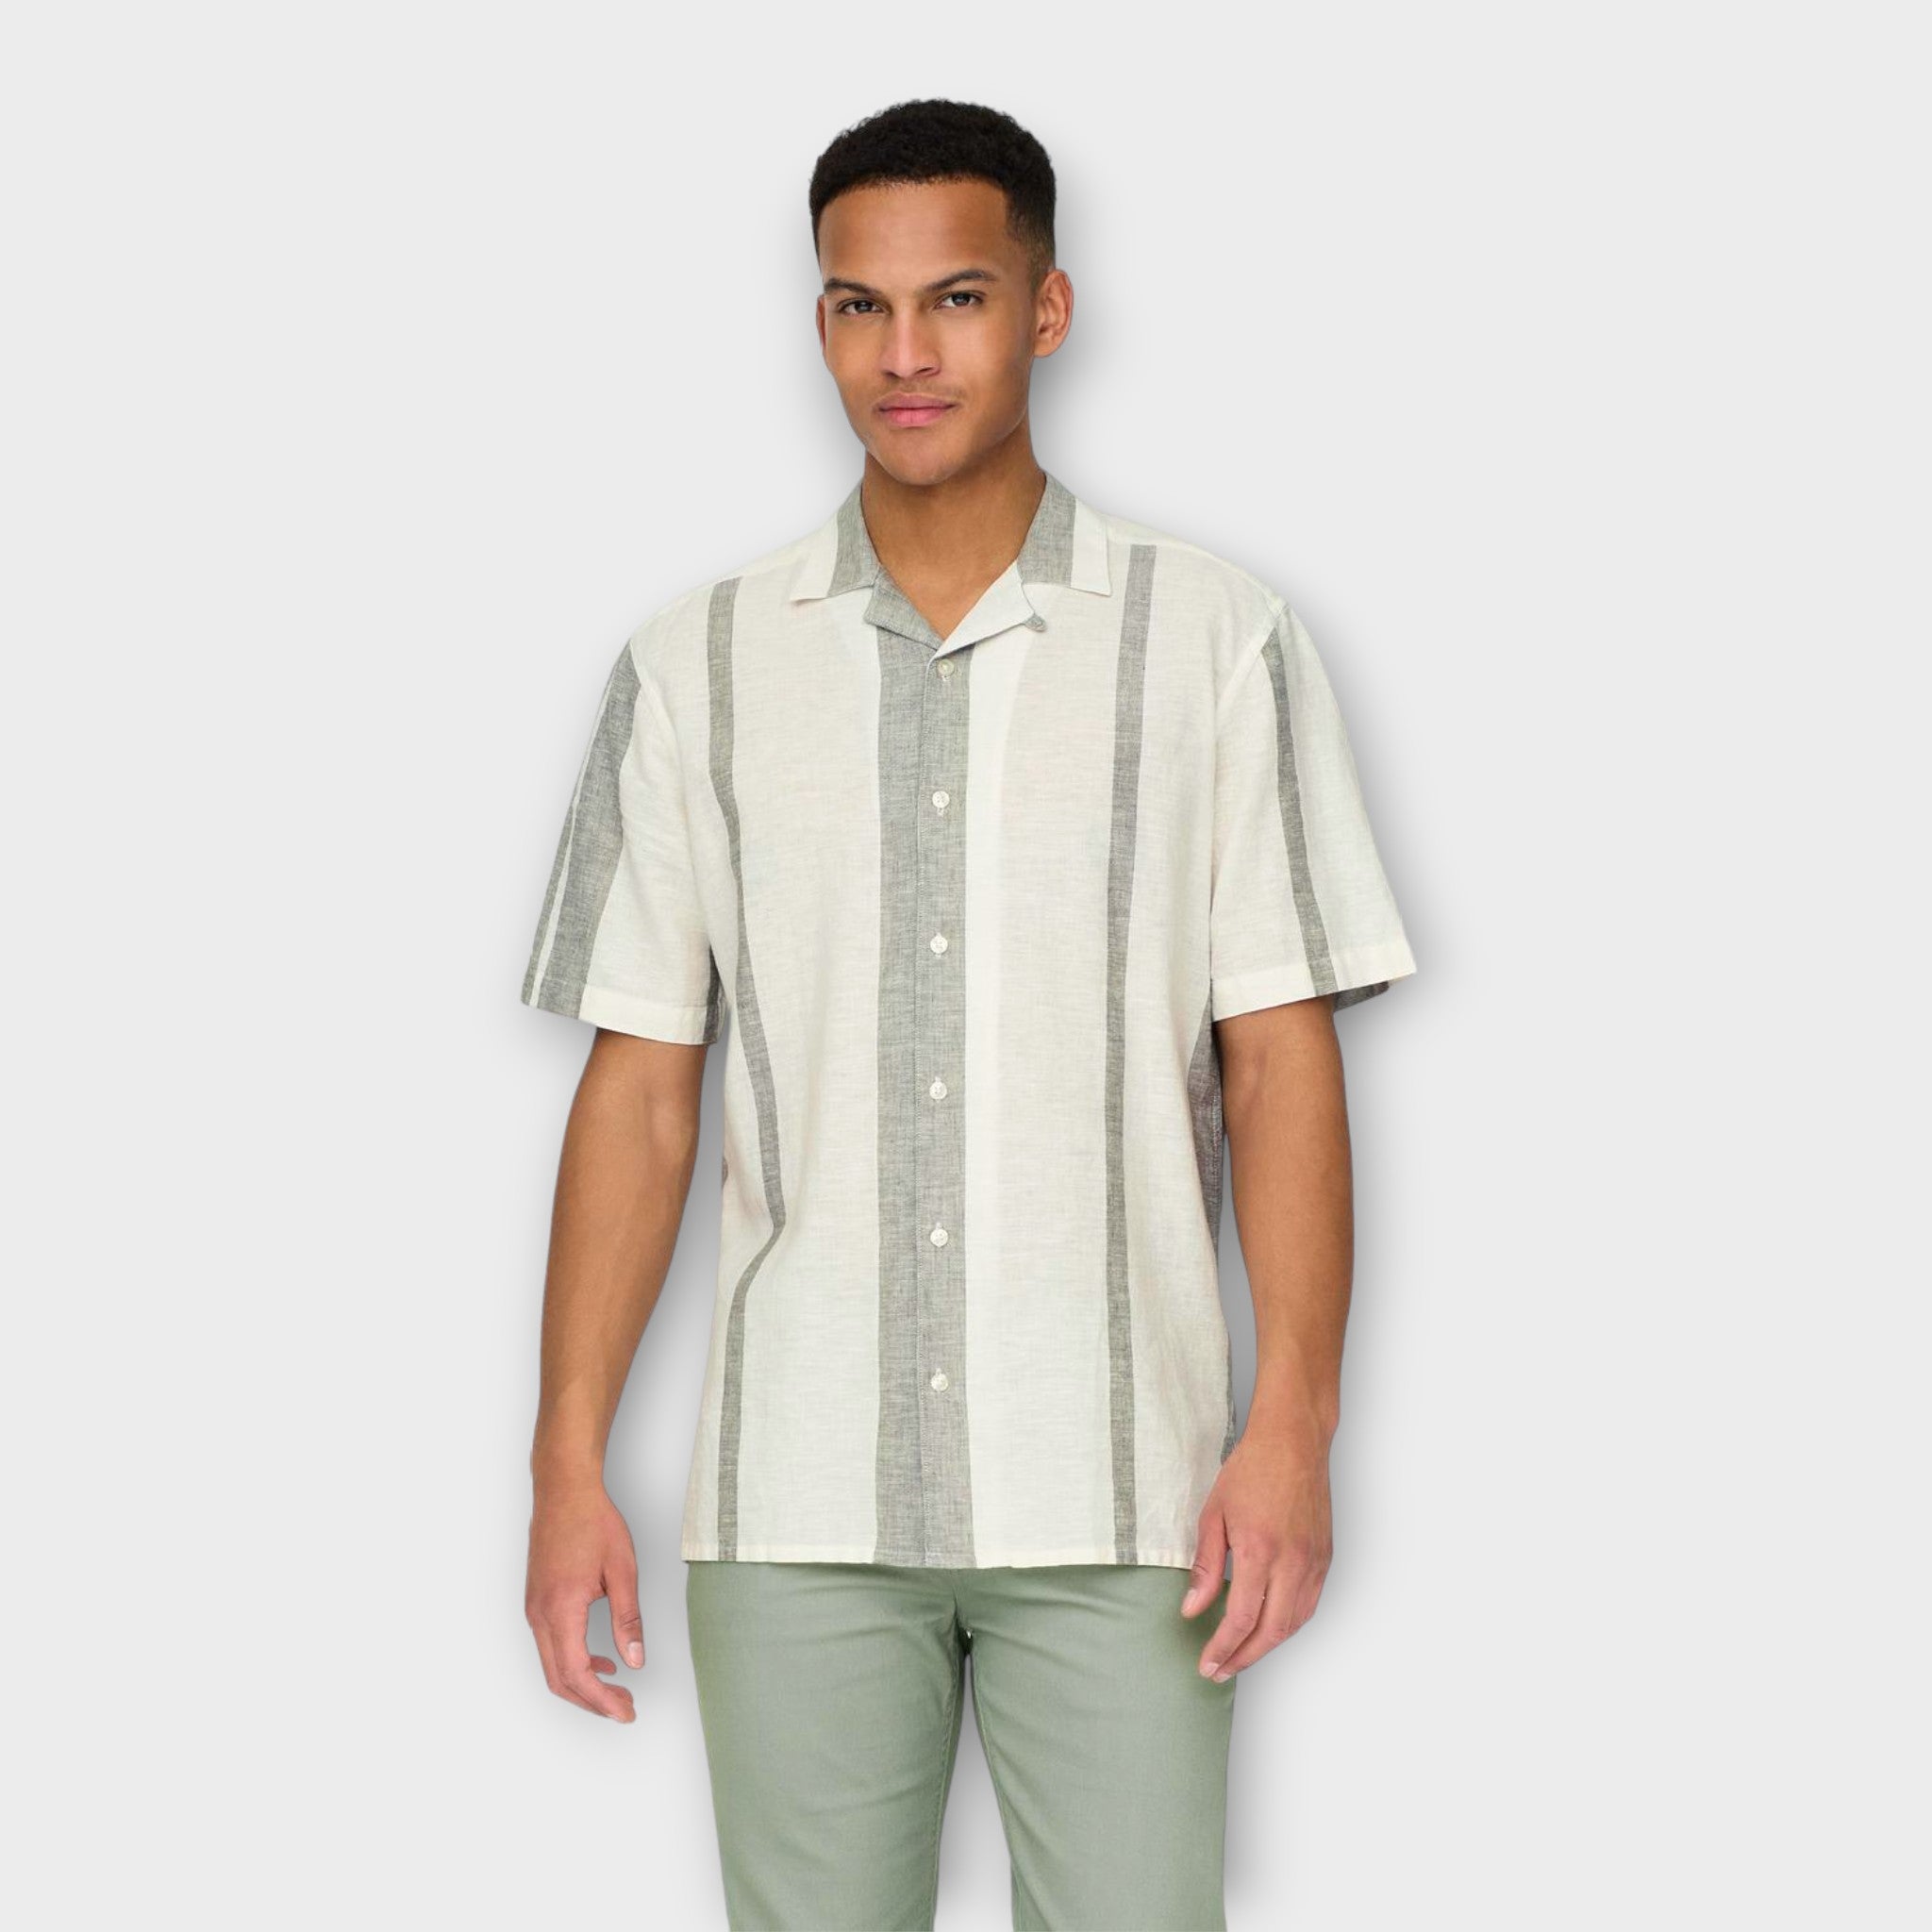 Only And Sons Caiden Stripe Linen Resort Shirt Dusty Olive. Lækker kortærmet råhvid stribet hørskjorte med Cuba Krave. Her set  på model forfra.